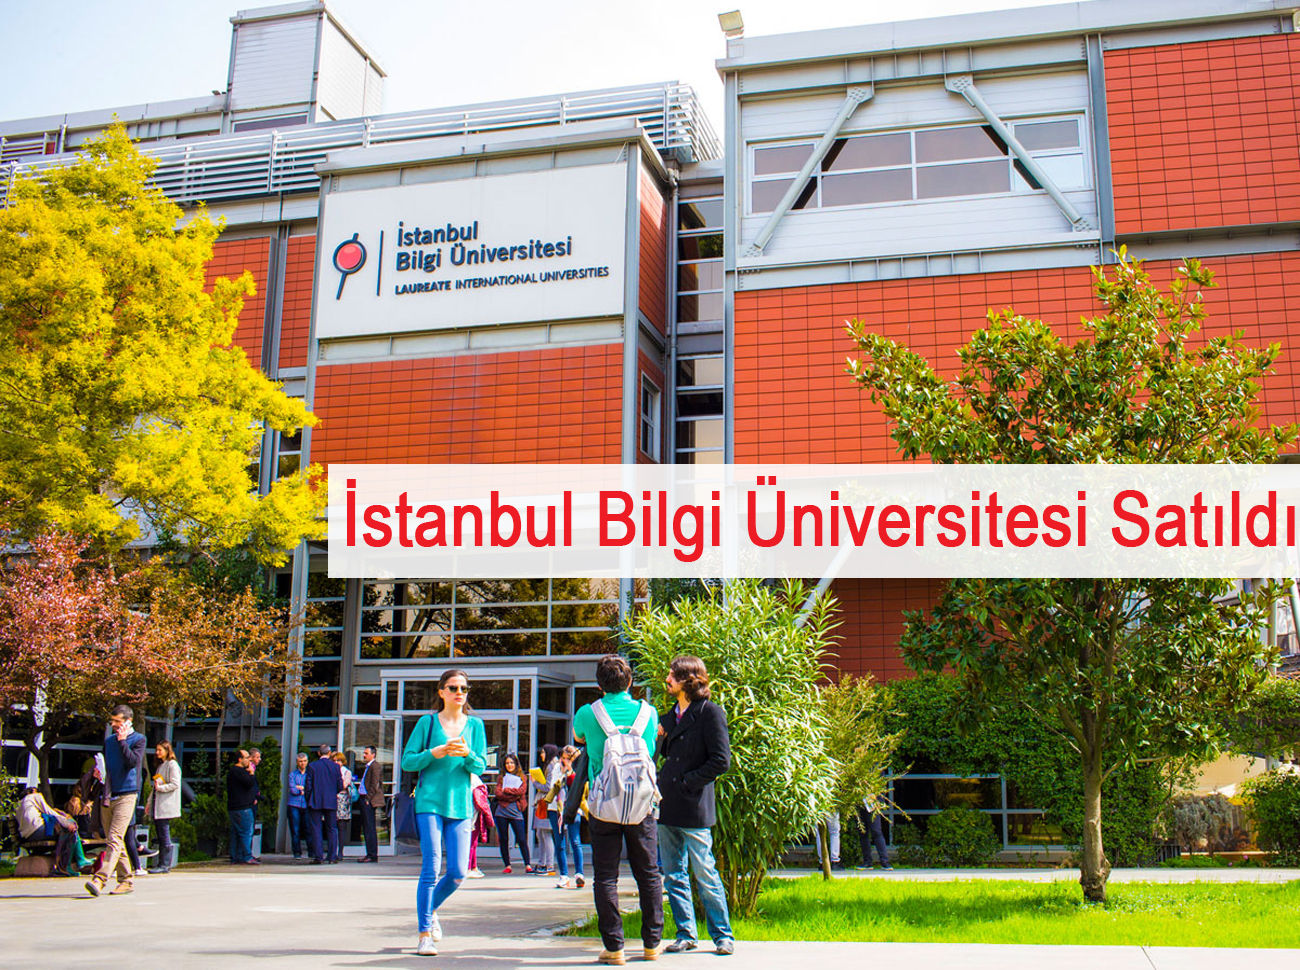 İstanbul Bilgi Üniversitesi Can Holding'e Satıldı